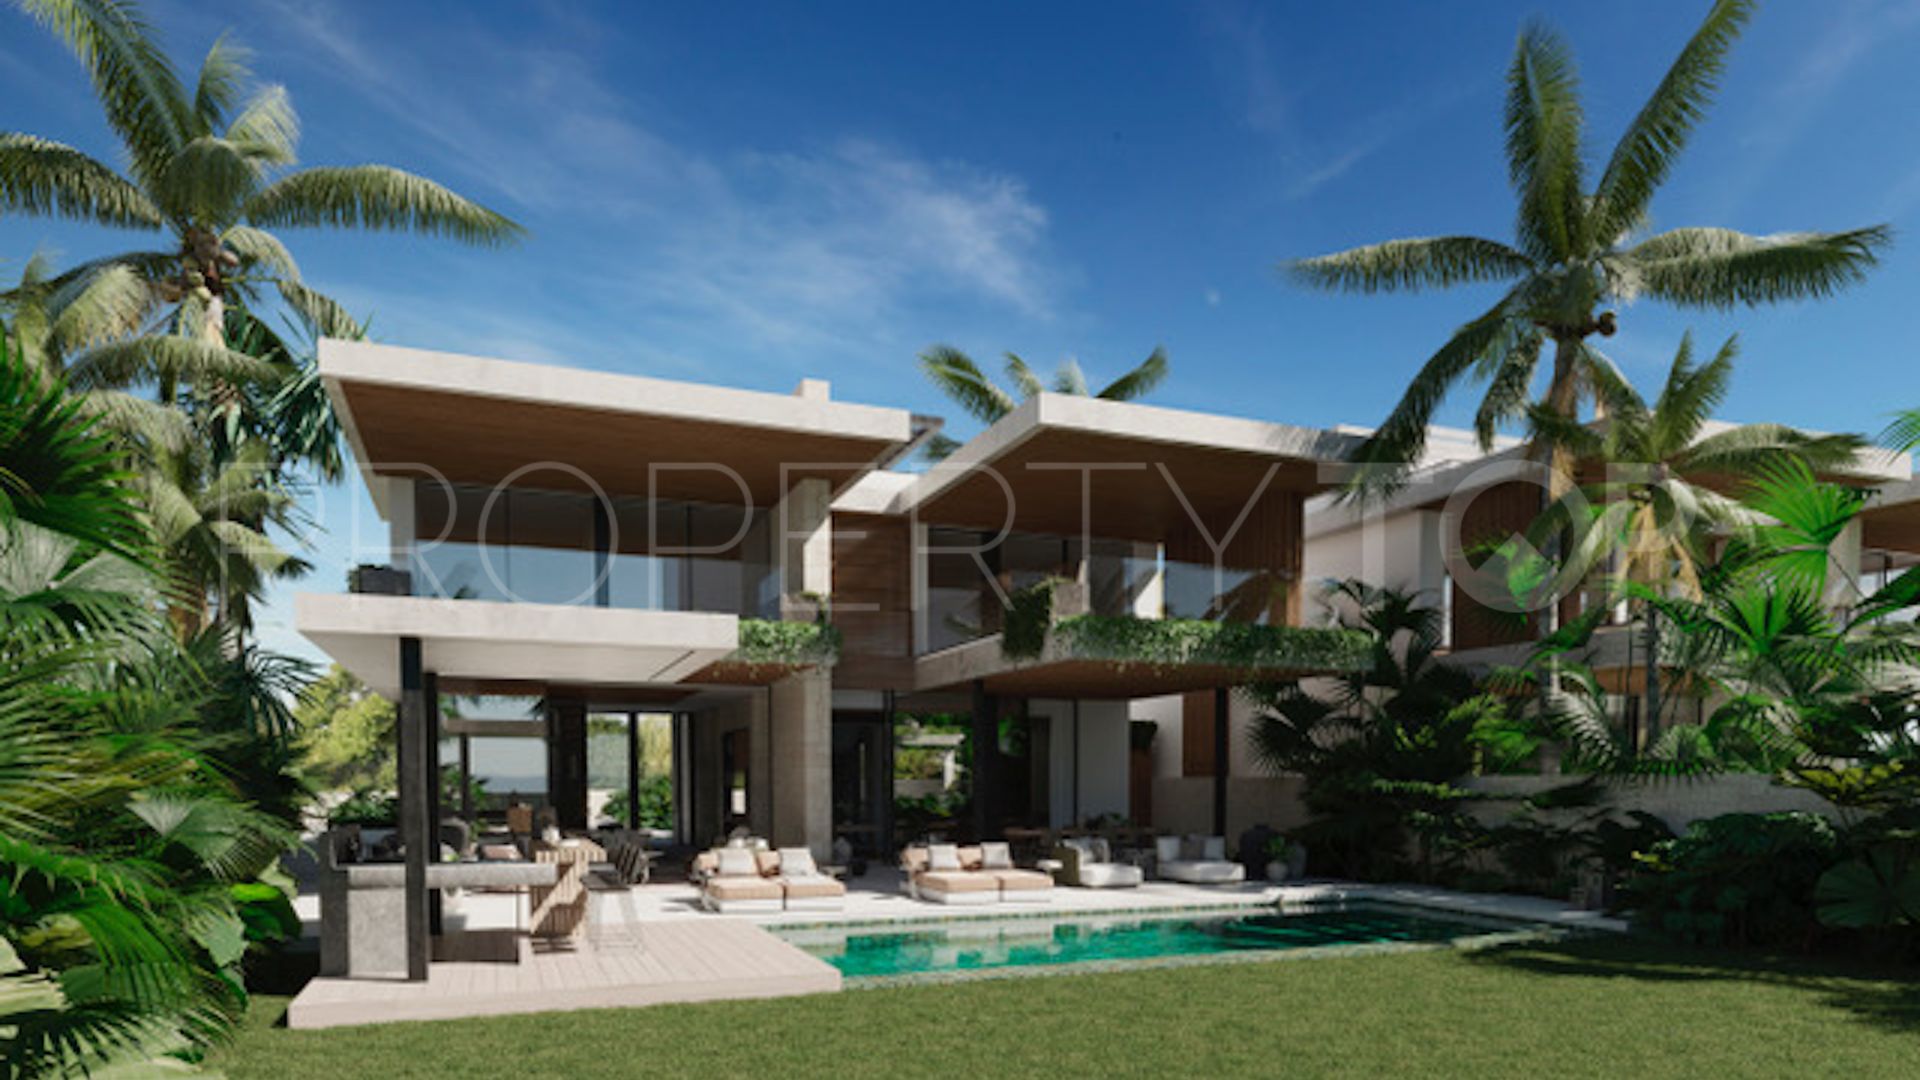 4 bedrooms villa in Cortijo Blanco for sale